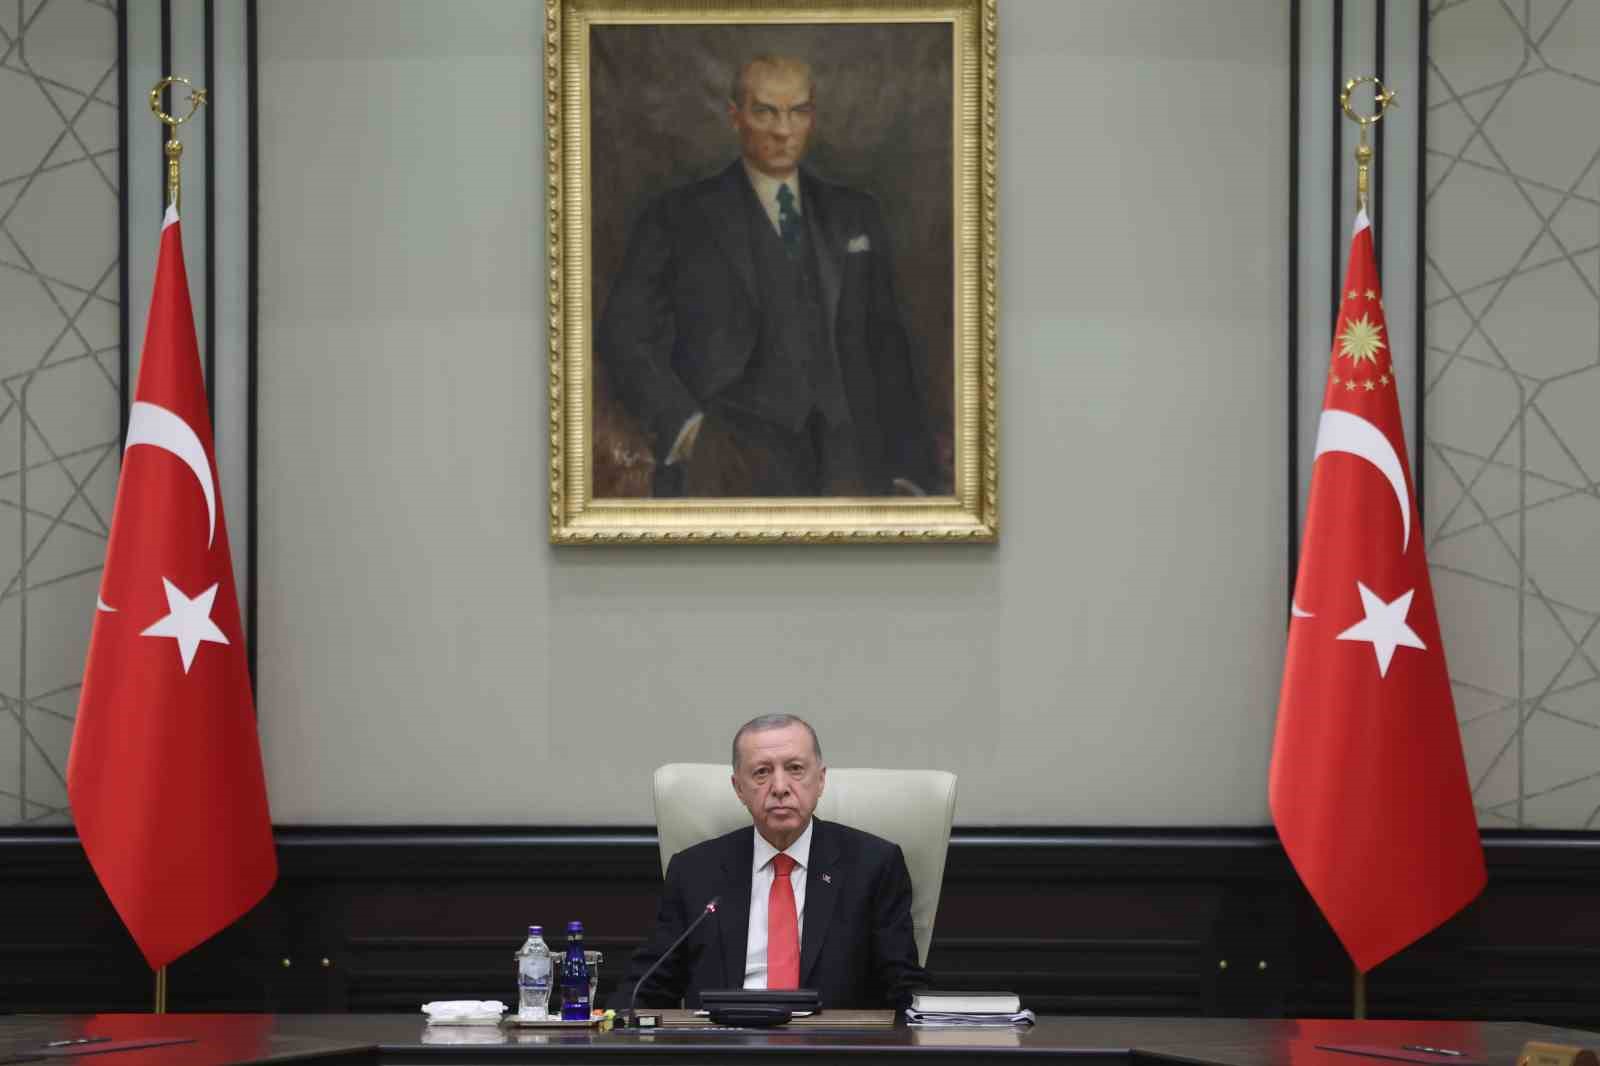 Cumhurbaşkanı Erdoğan: “Ekonomideki sorunları aşacak irademiz, tecrübemiz, potansiyelimiz ve programımız mevcuttur”